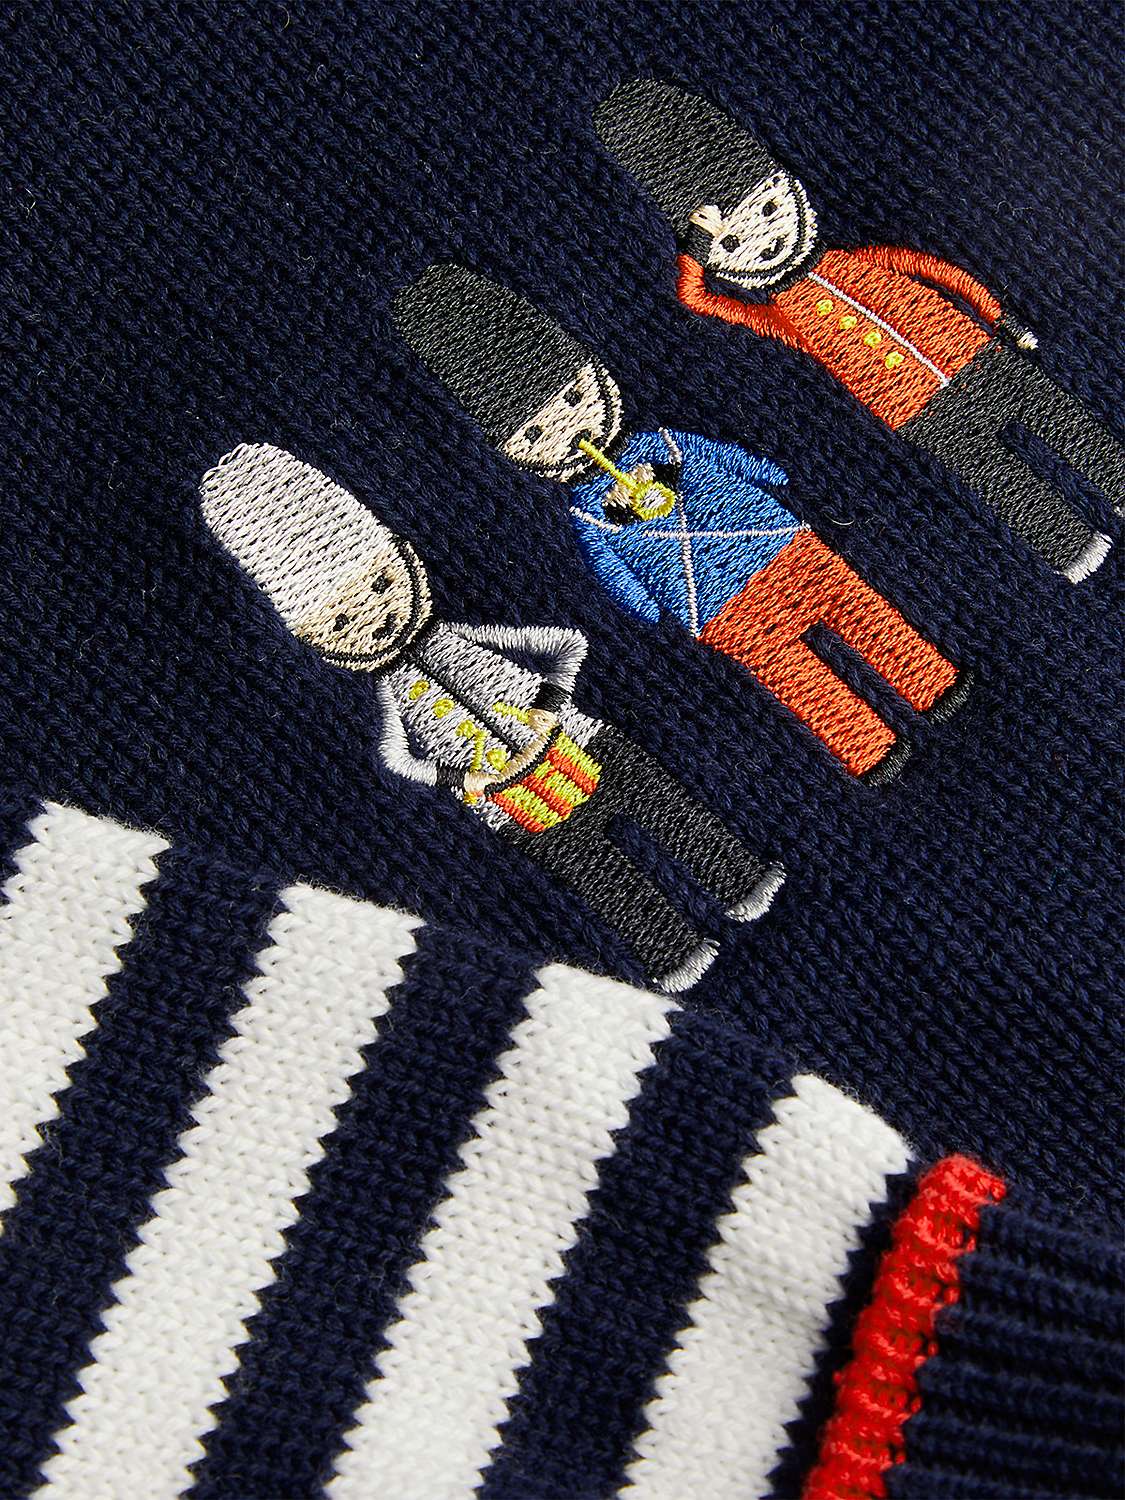 Buy Monsoon Baby London Knitted Hoodie & Stripe Leggings Set, Navy/Multi Online at johnlewis.com